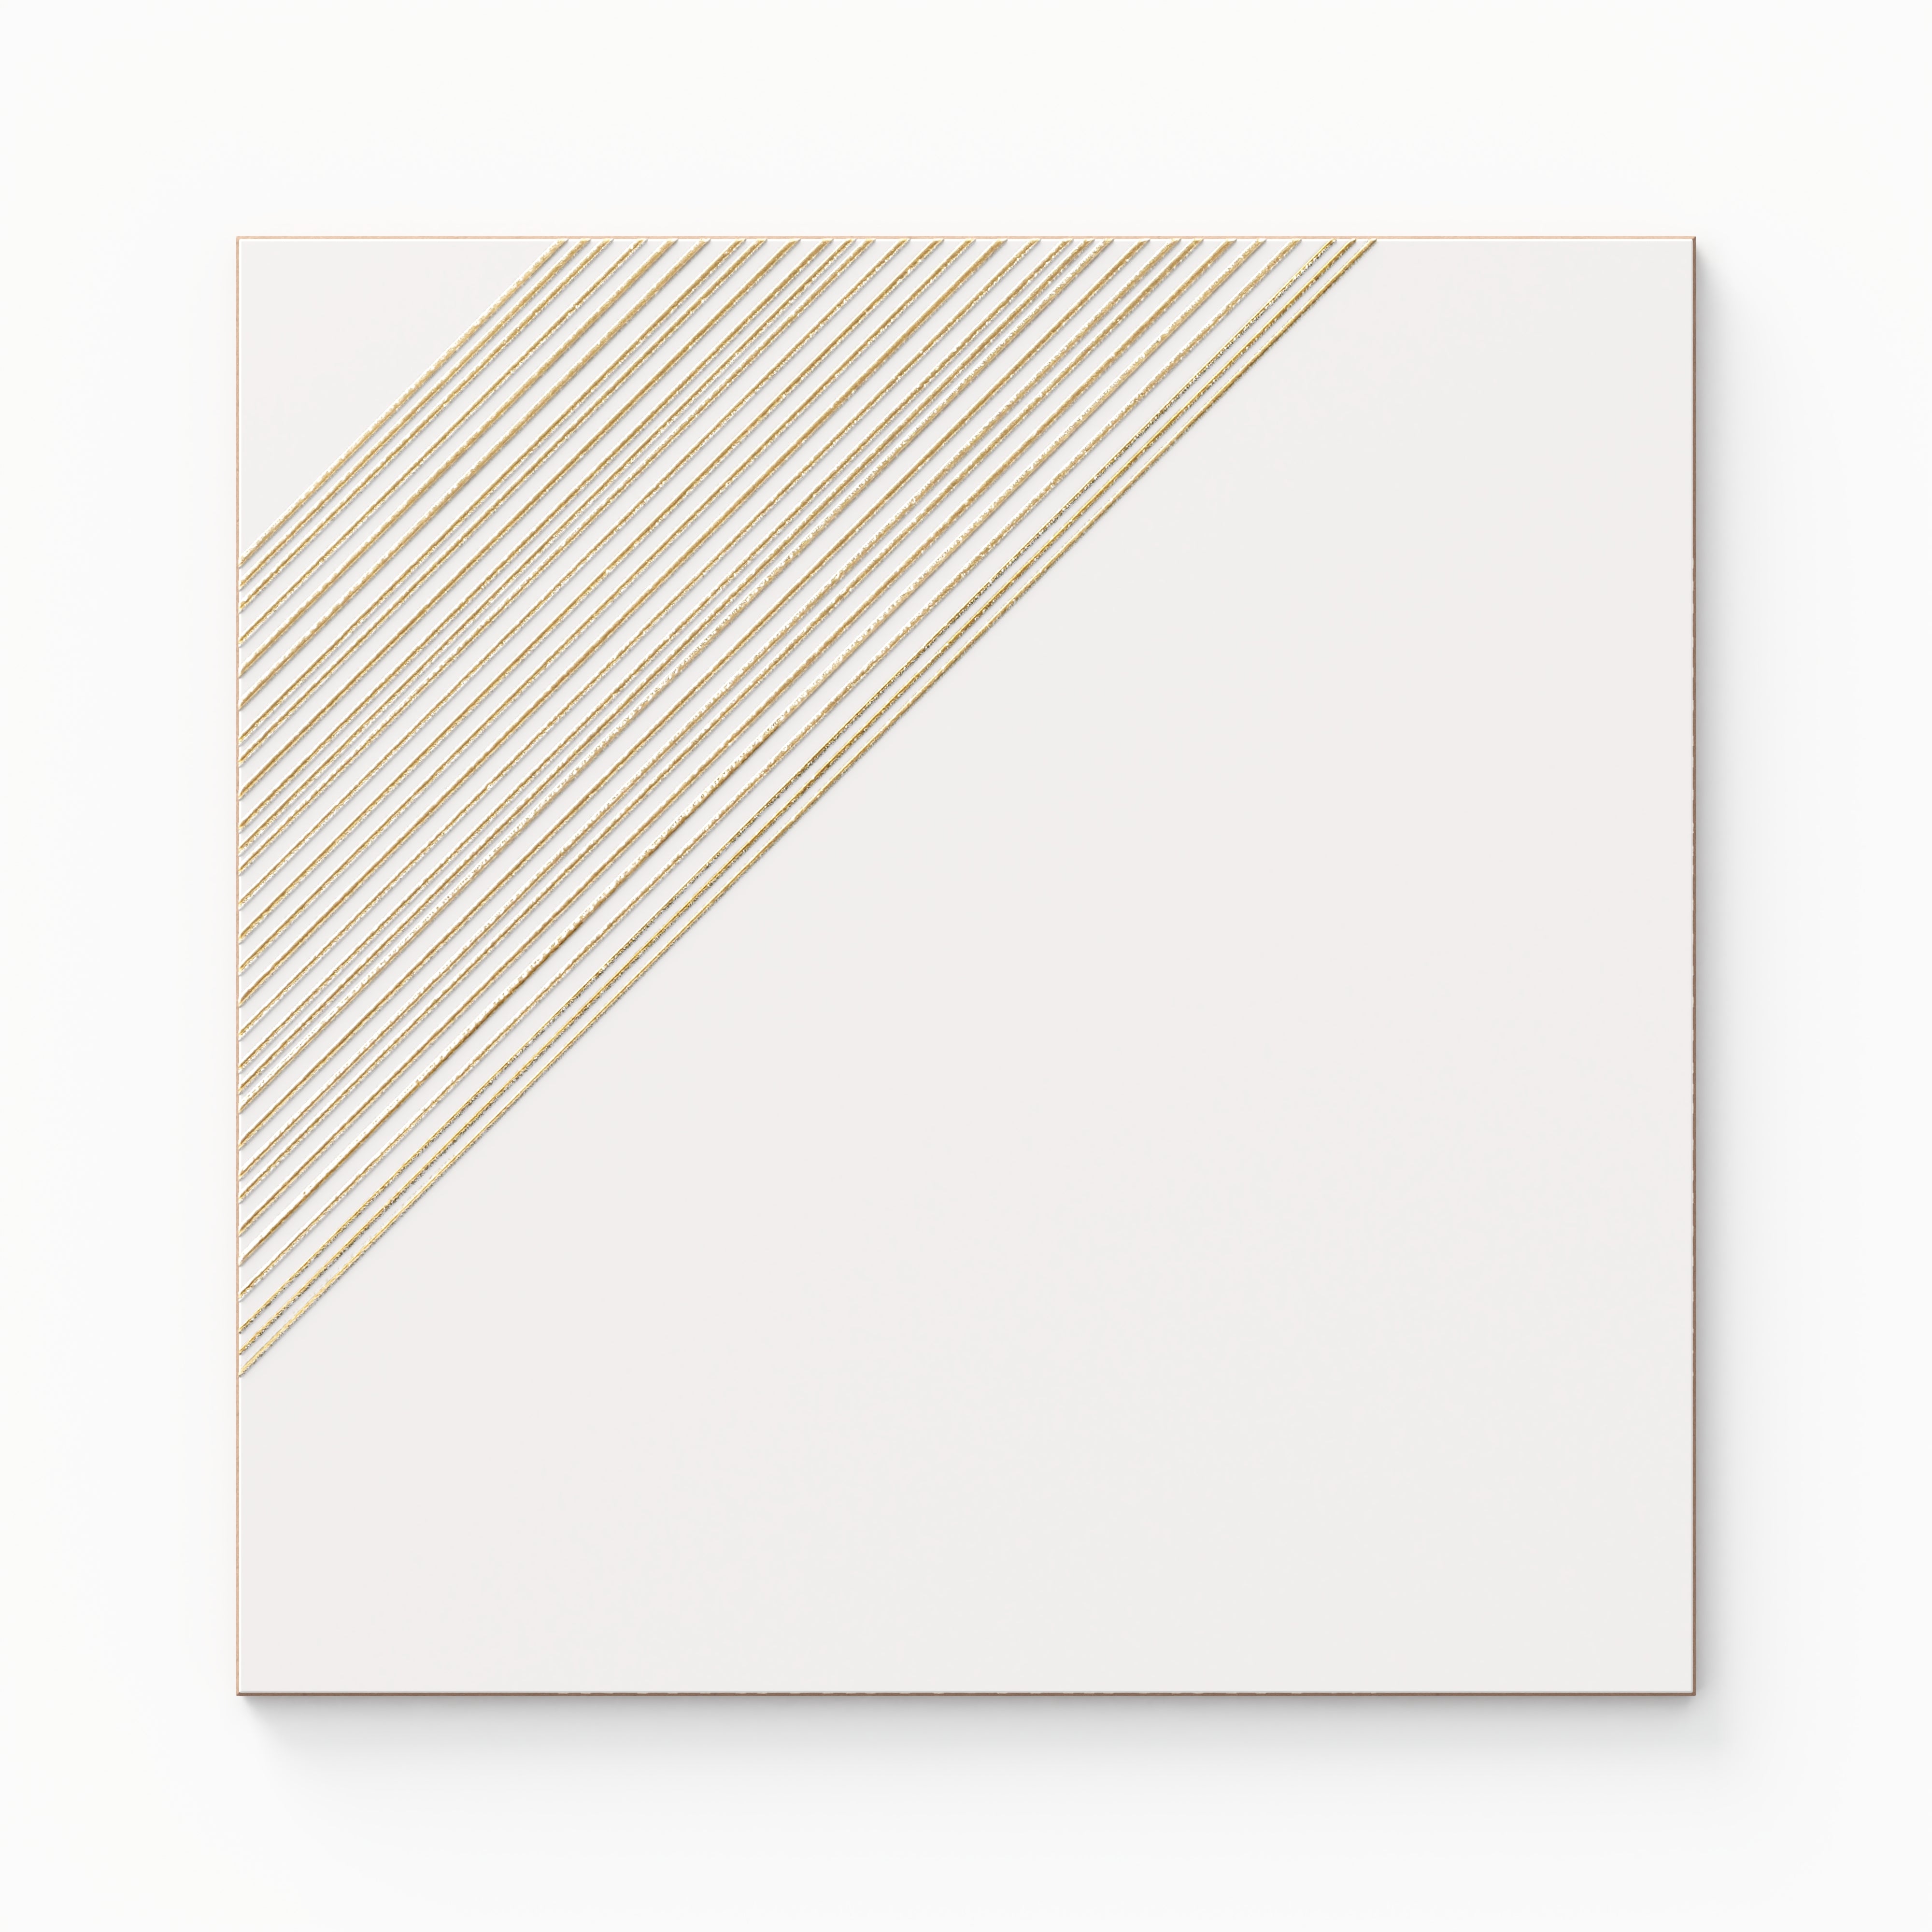 Estelle 12x12 Satin Ceramic Tile in Deco 3 White Gold Sample